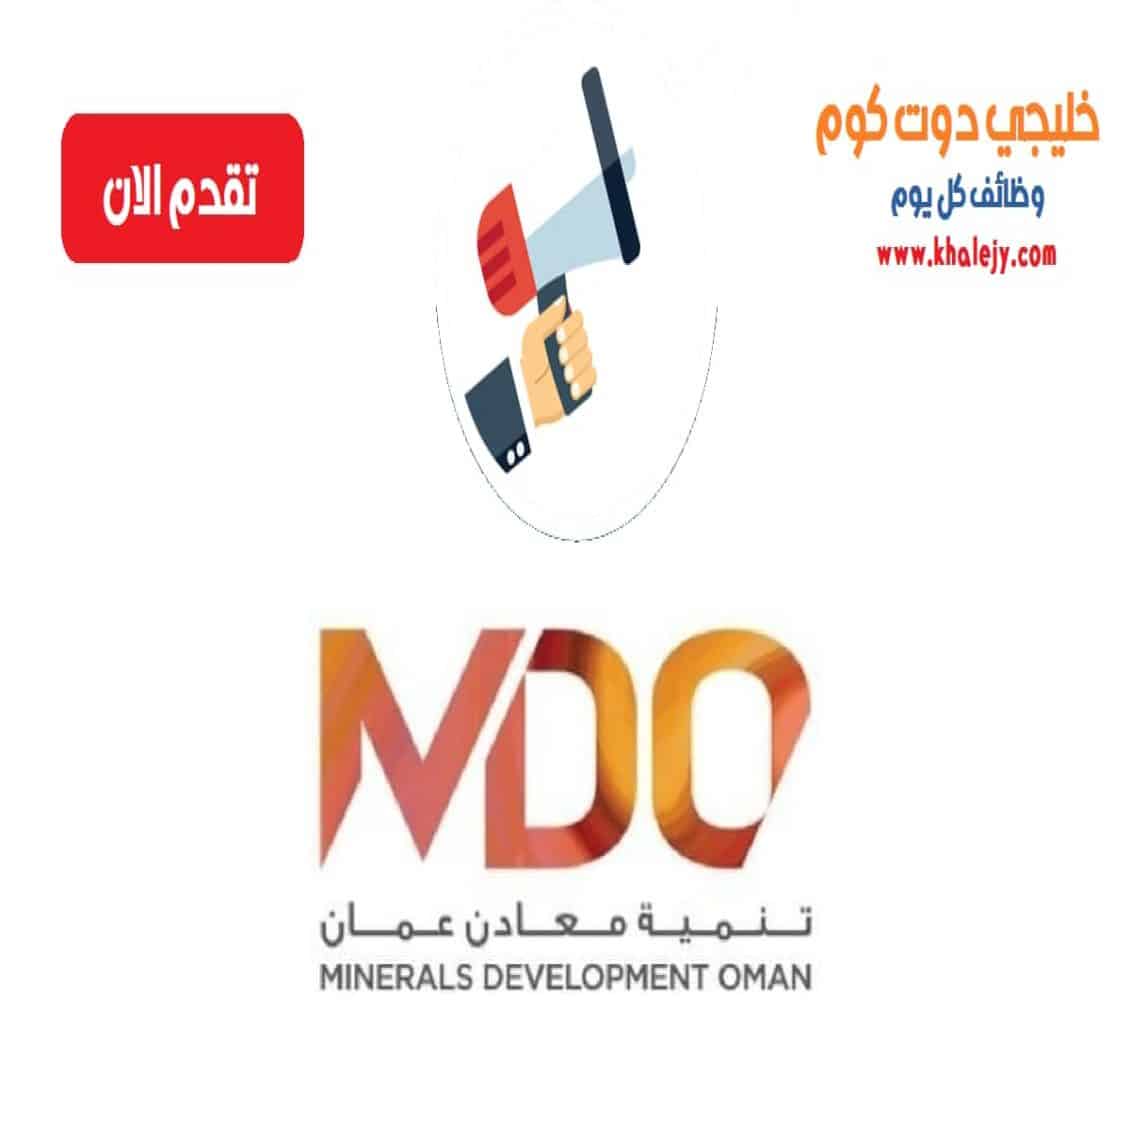 وظائف شركة تنمية معادن عمان لجميع الجنسيات